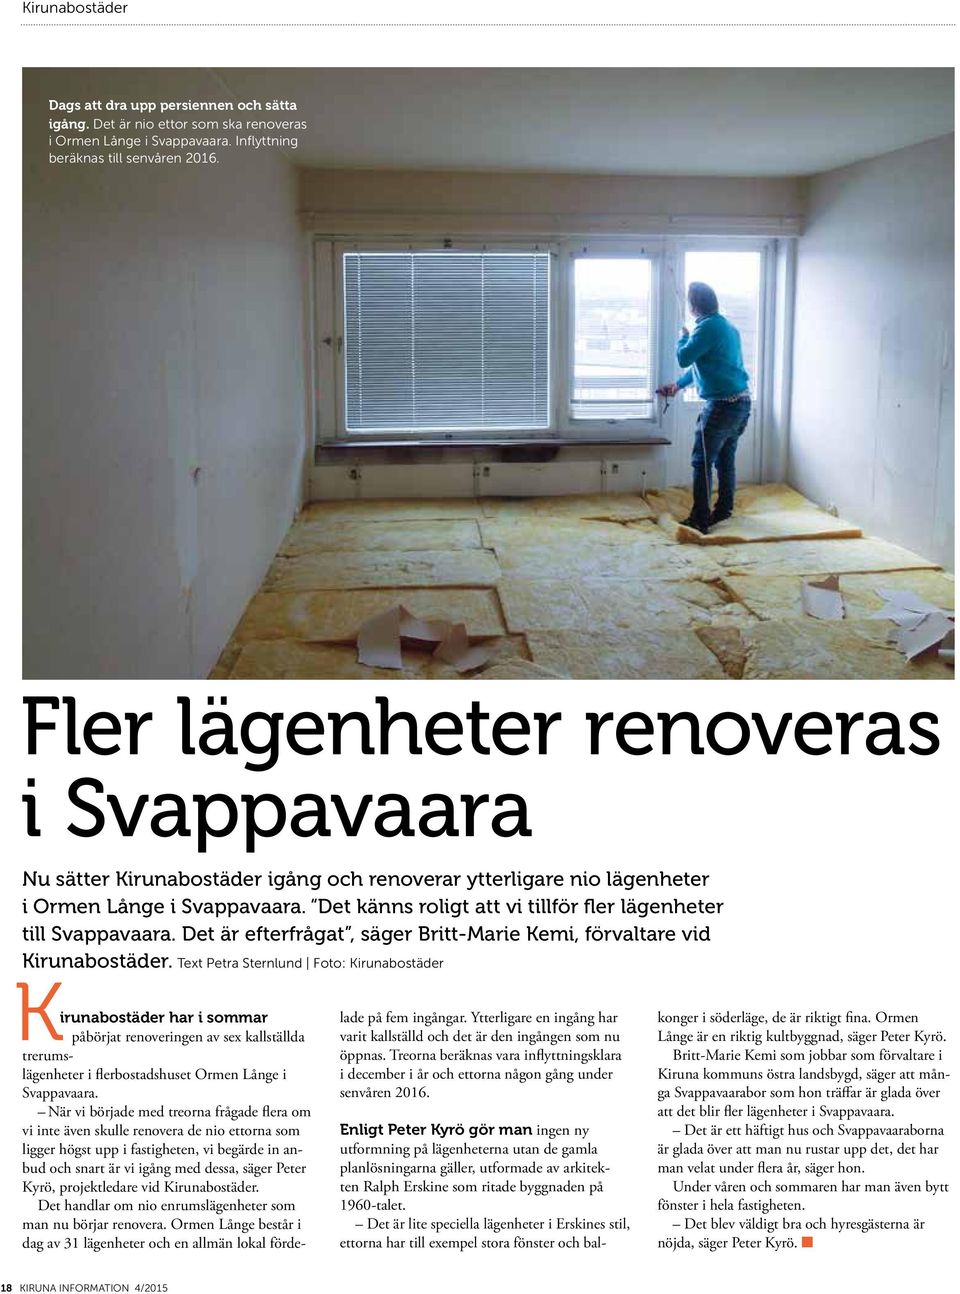 Det känns roligt att vi tillför fler lägenheter till Svappavaara. Det är efterfrågat, säger Britt-Marie Kemi, förvaltare vid Kirunabostäder.